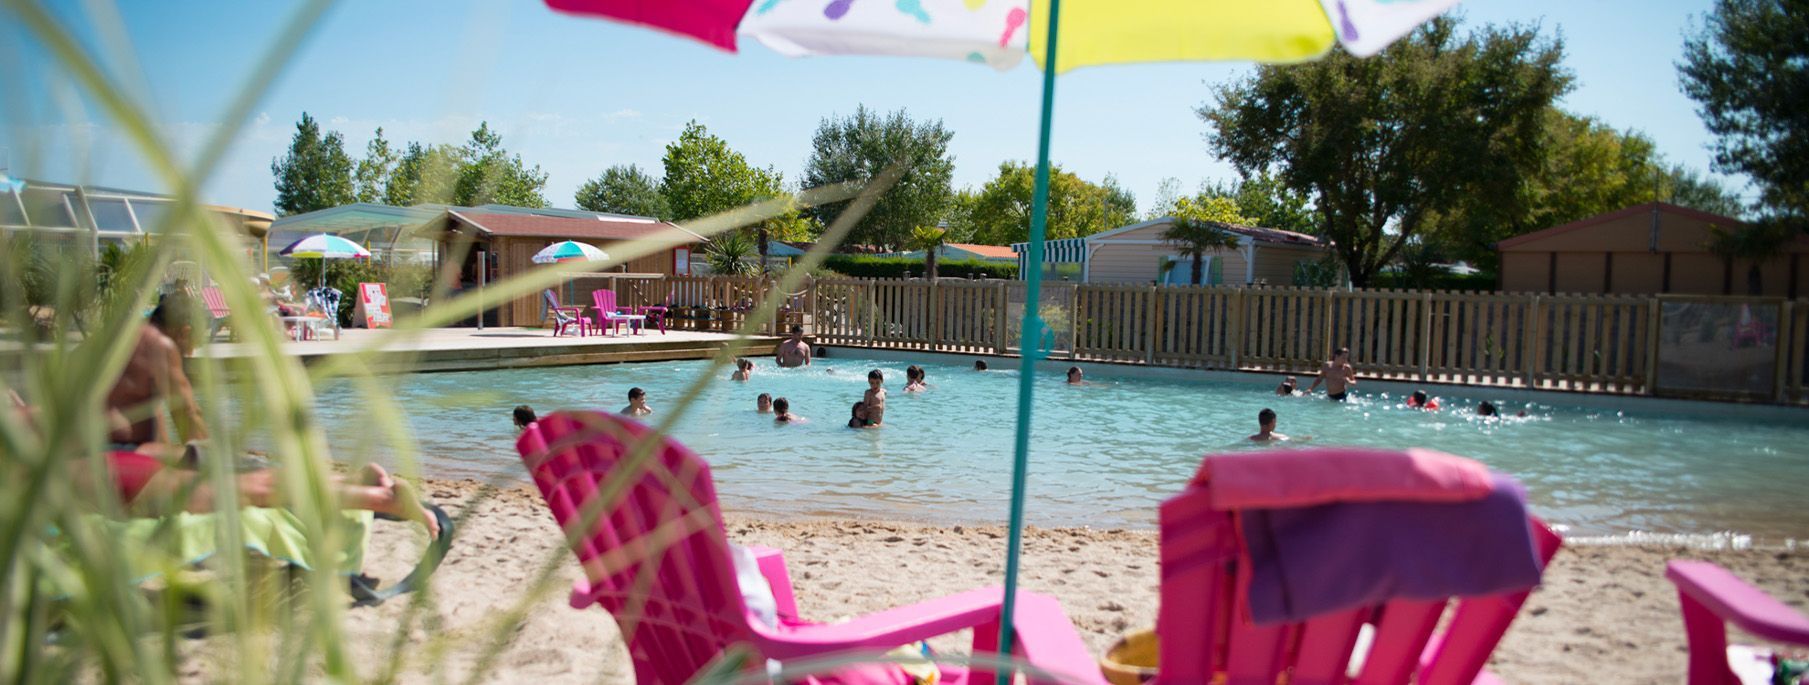 Petites piscines hors sols pour enfants : Le top 10 - Le Parisien